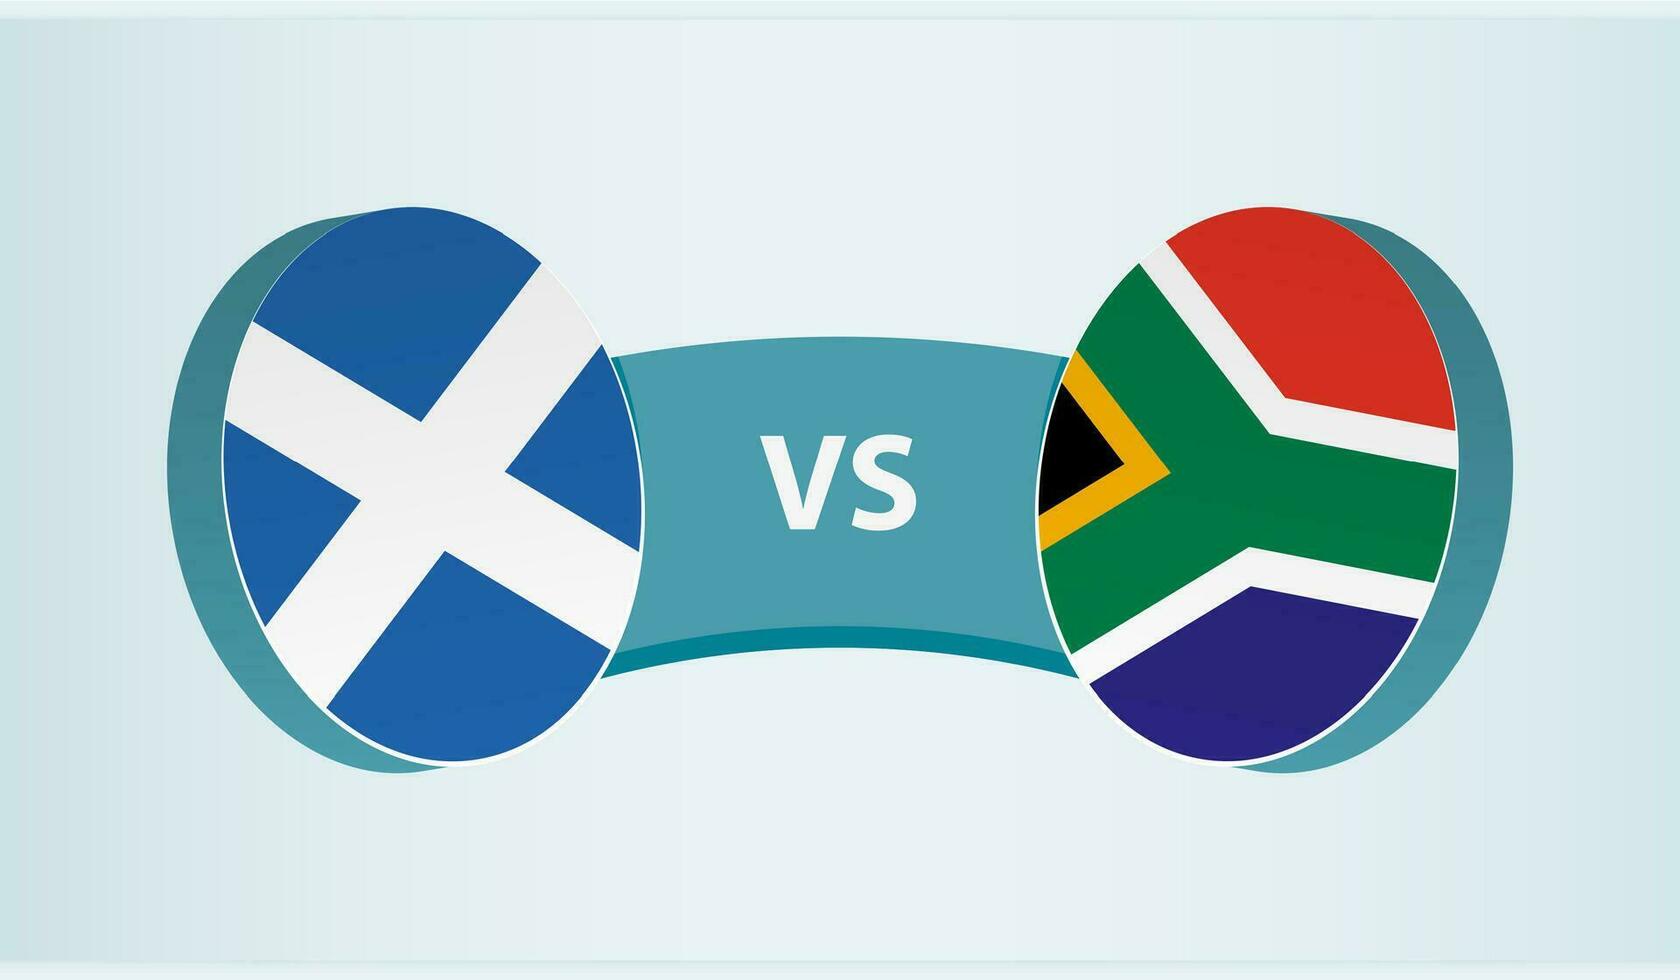 skottland mot söder afrika, team sporter konkurrens begrepp. vektor